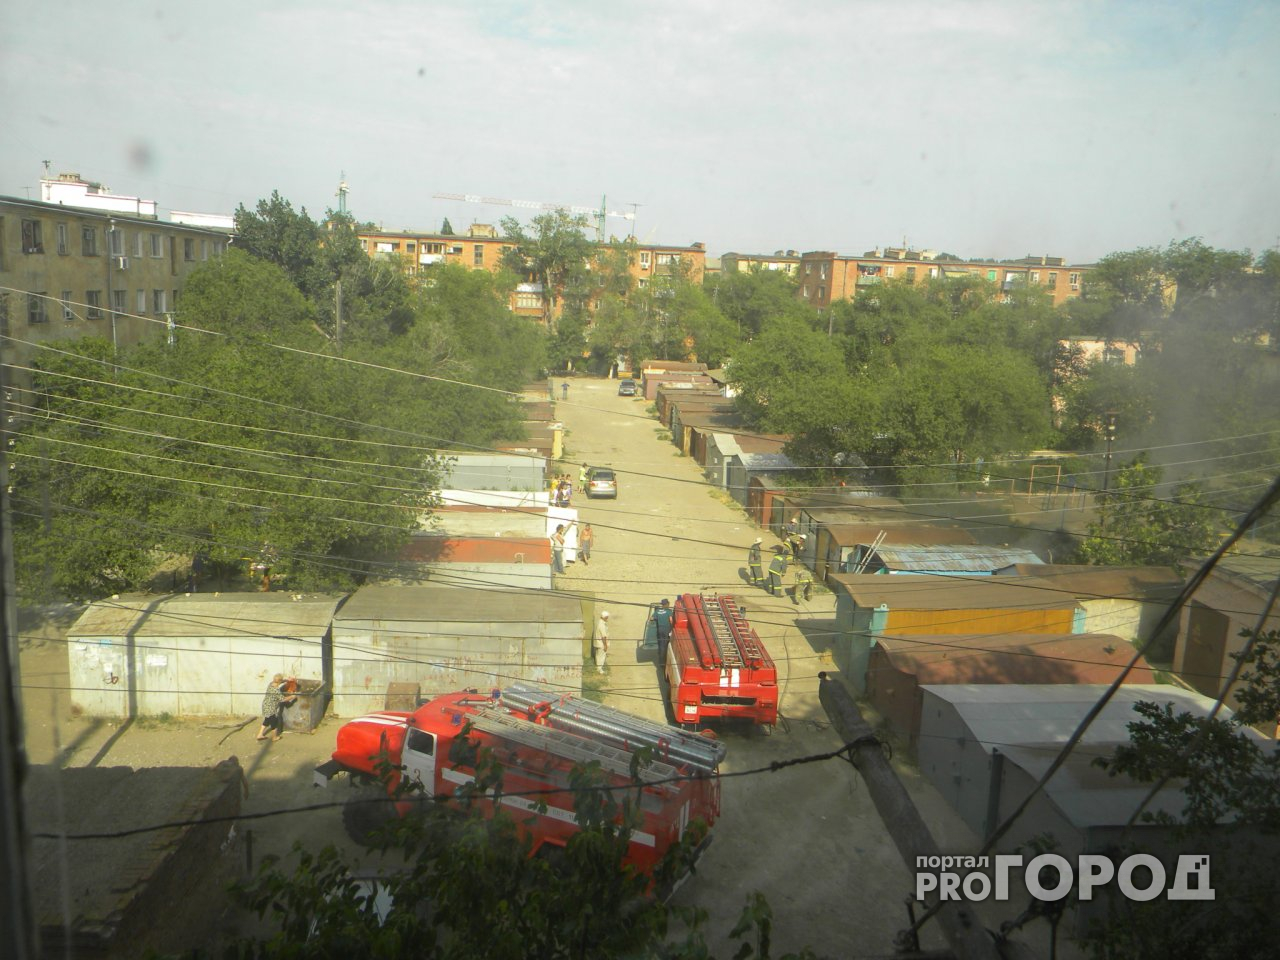 Три гаража и автомобиль "Москвич" сгорели в Автозаводском районе